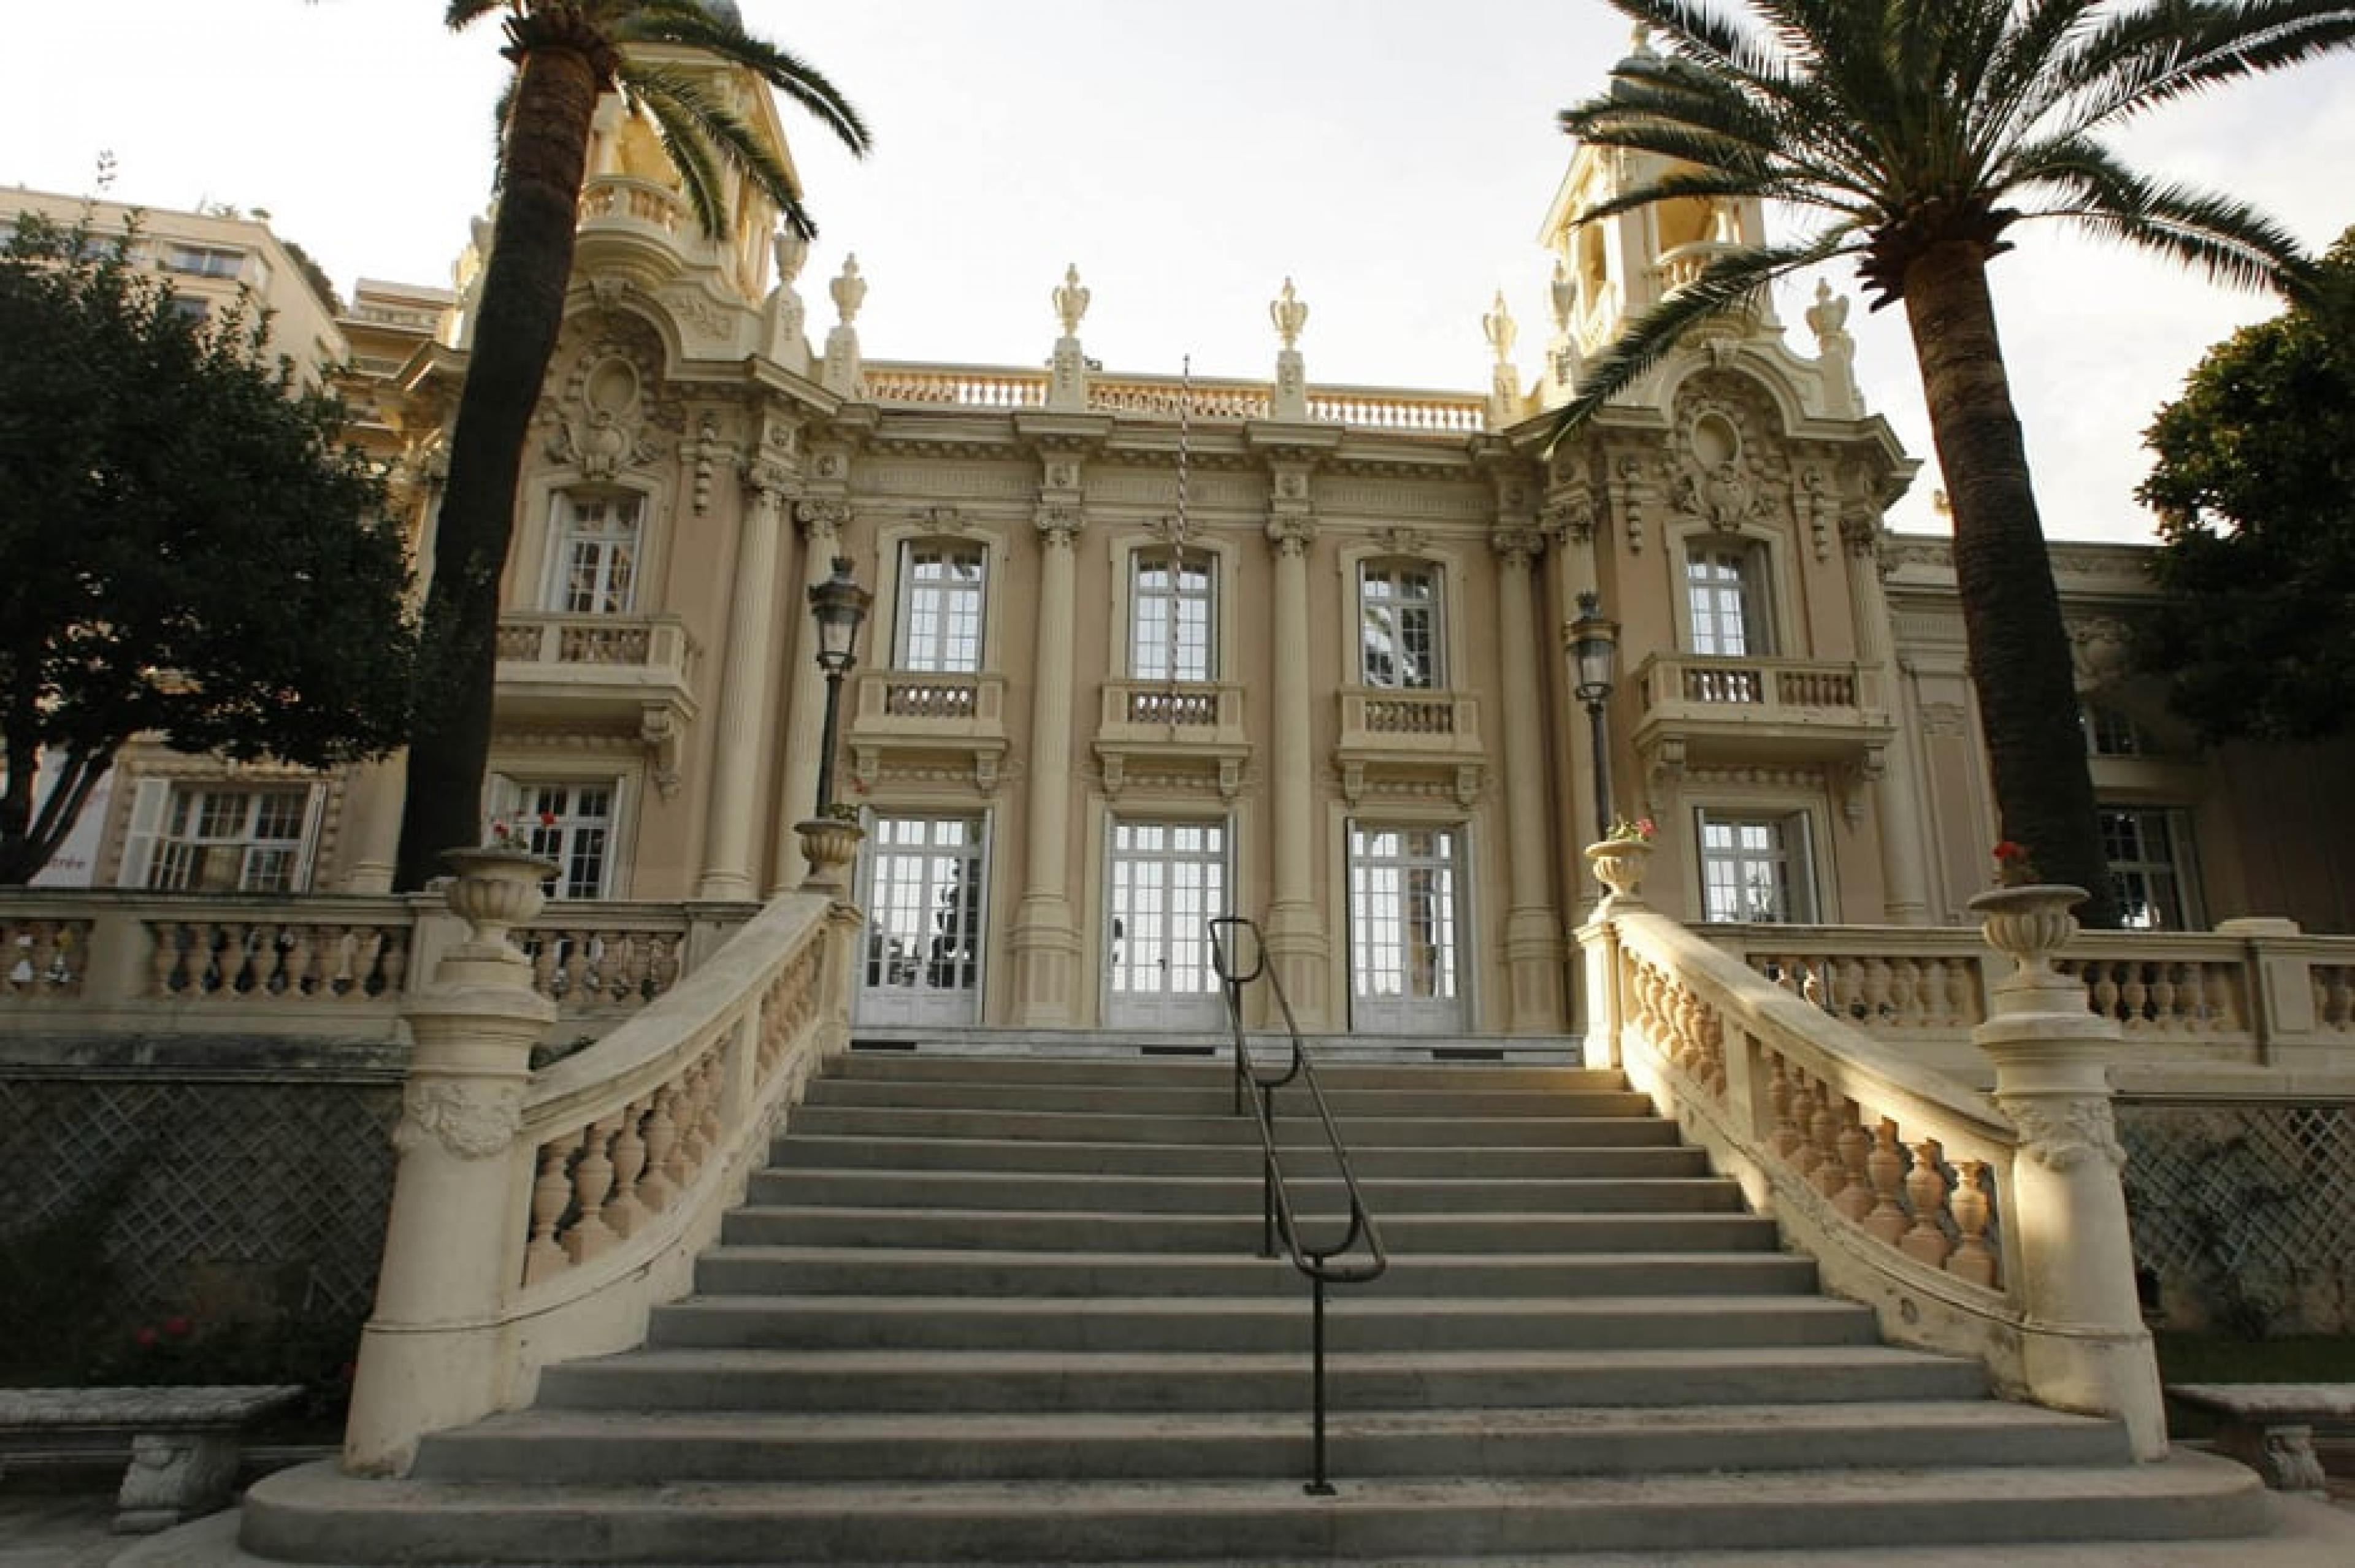 Exterior View-La Villa Sauber in Larvotto ,Monaco, Monaco-Courtesy Mauro Magliani and Barbara Piovan